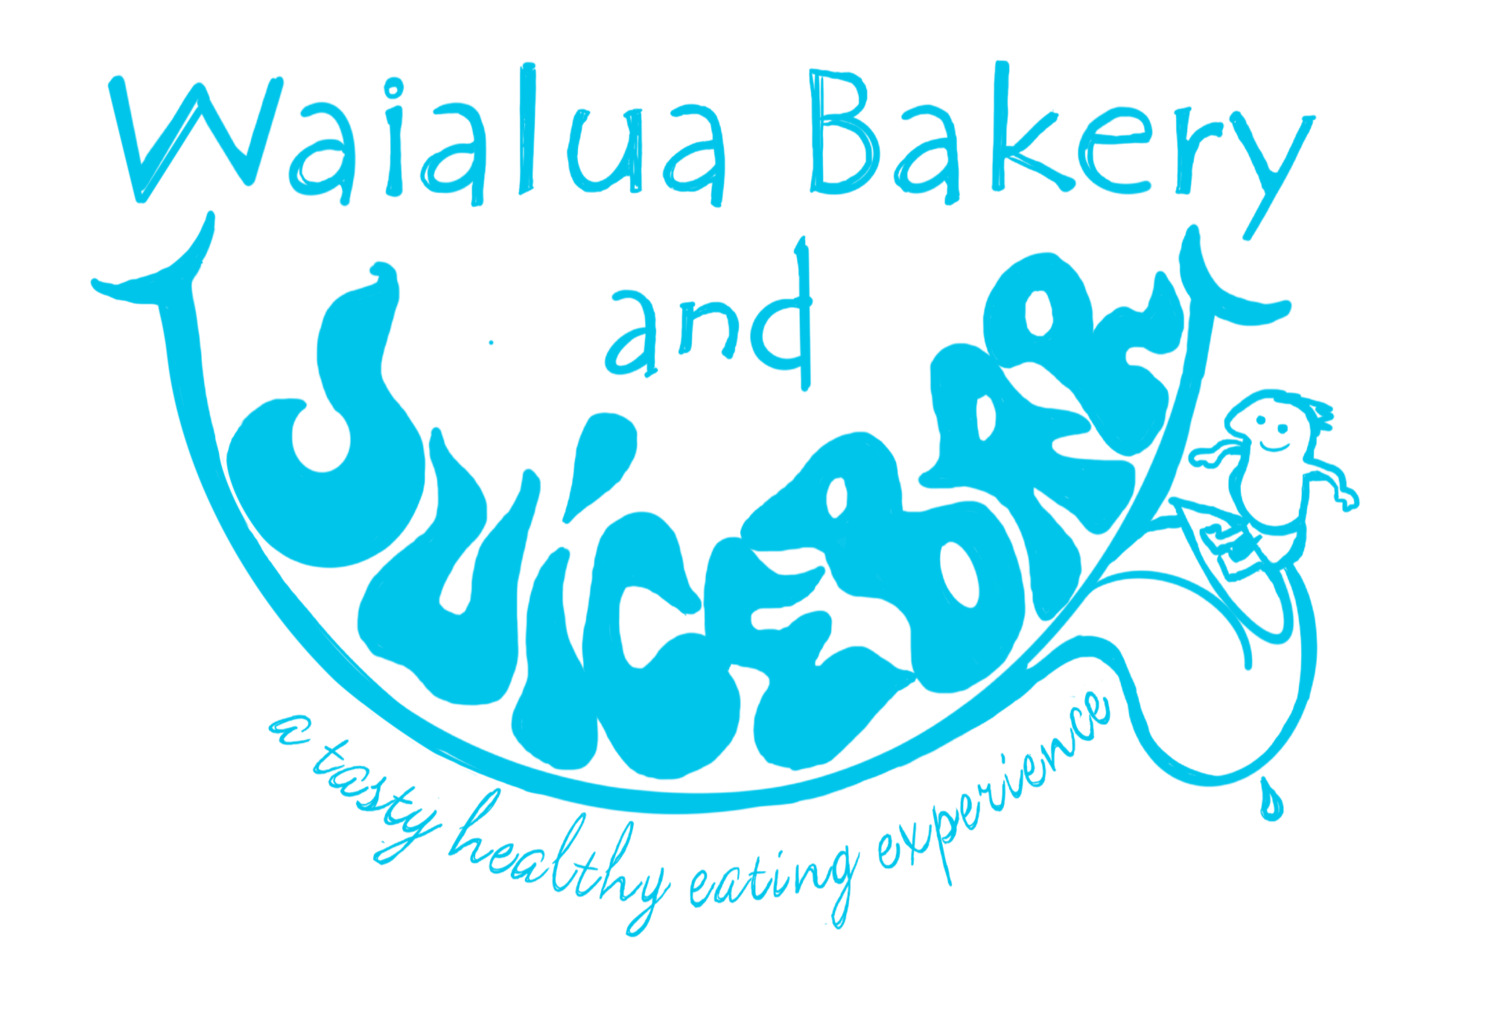 The Waialua Bakery